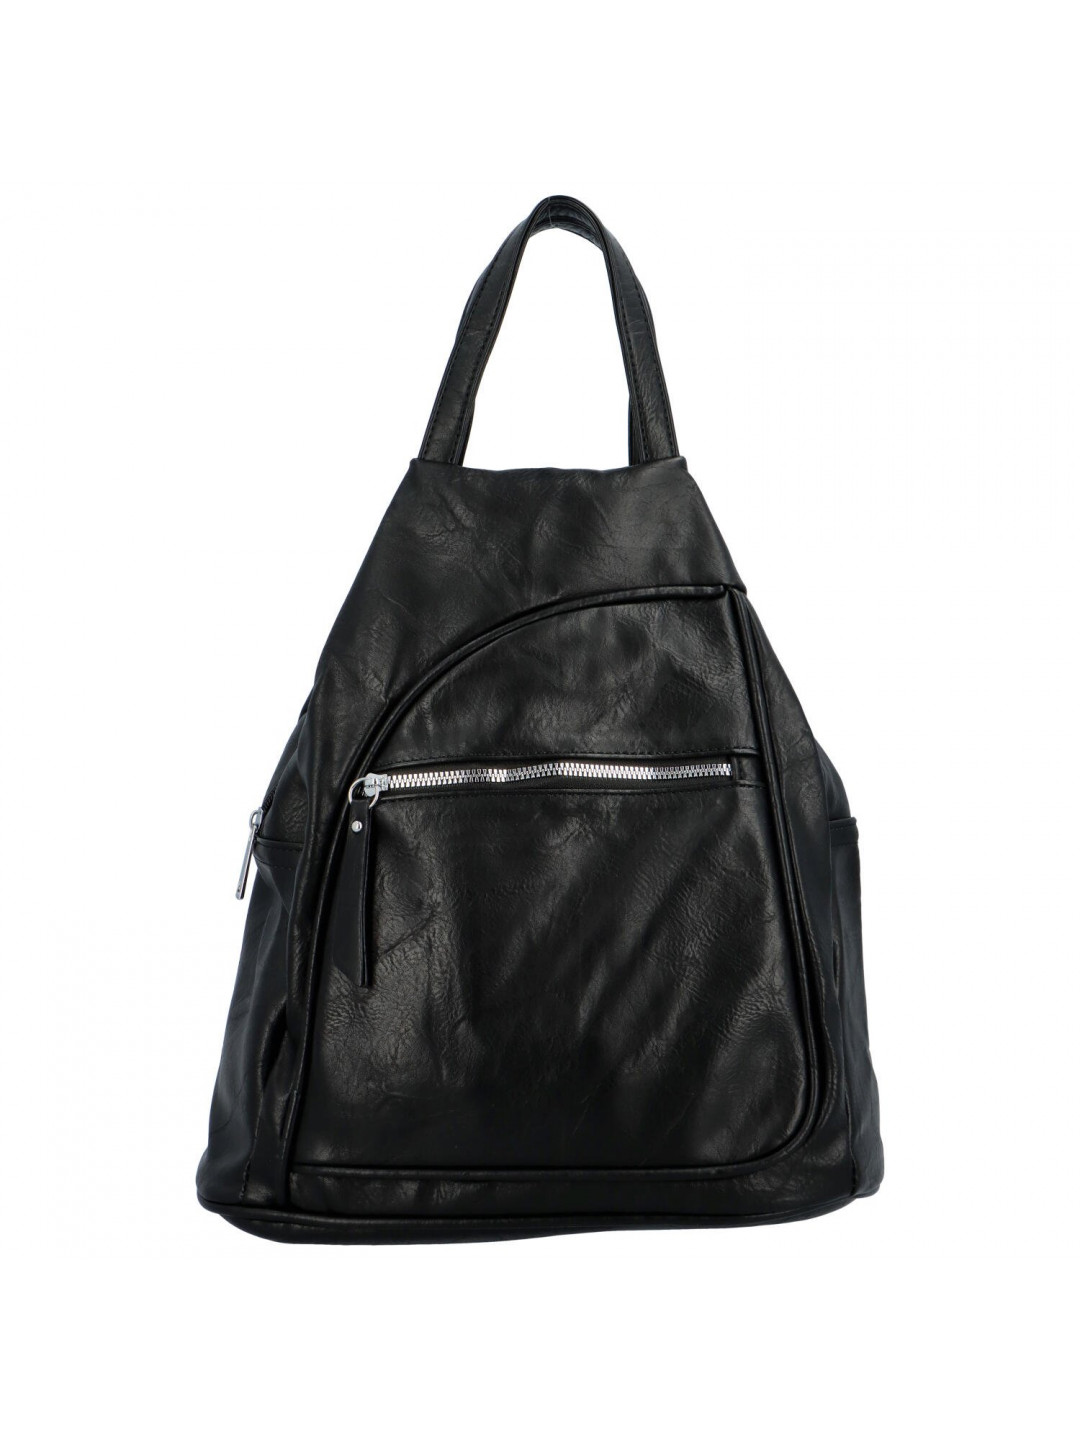 Trendový dámský koženkový batůžek Taran černá